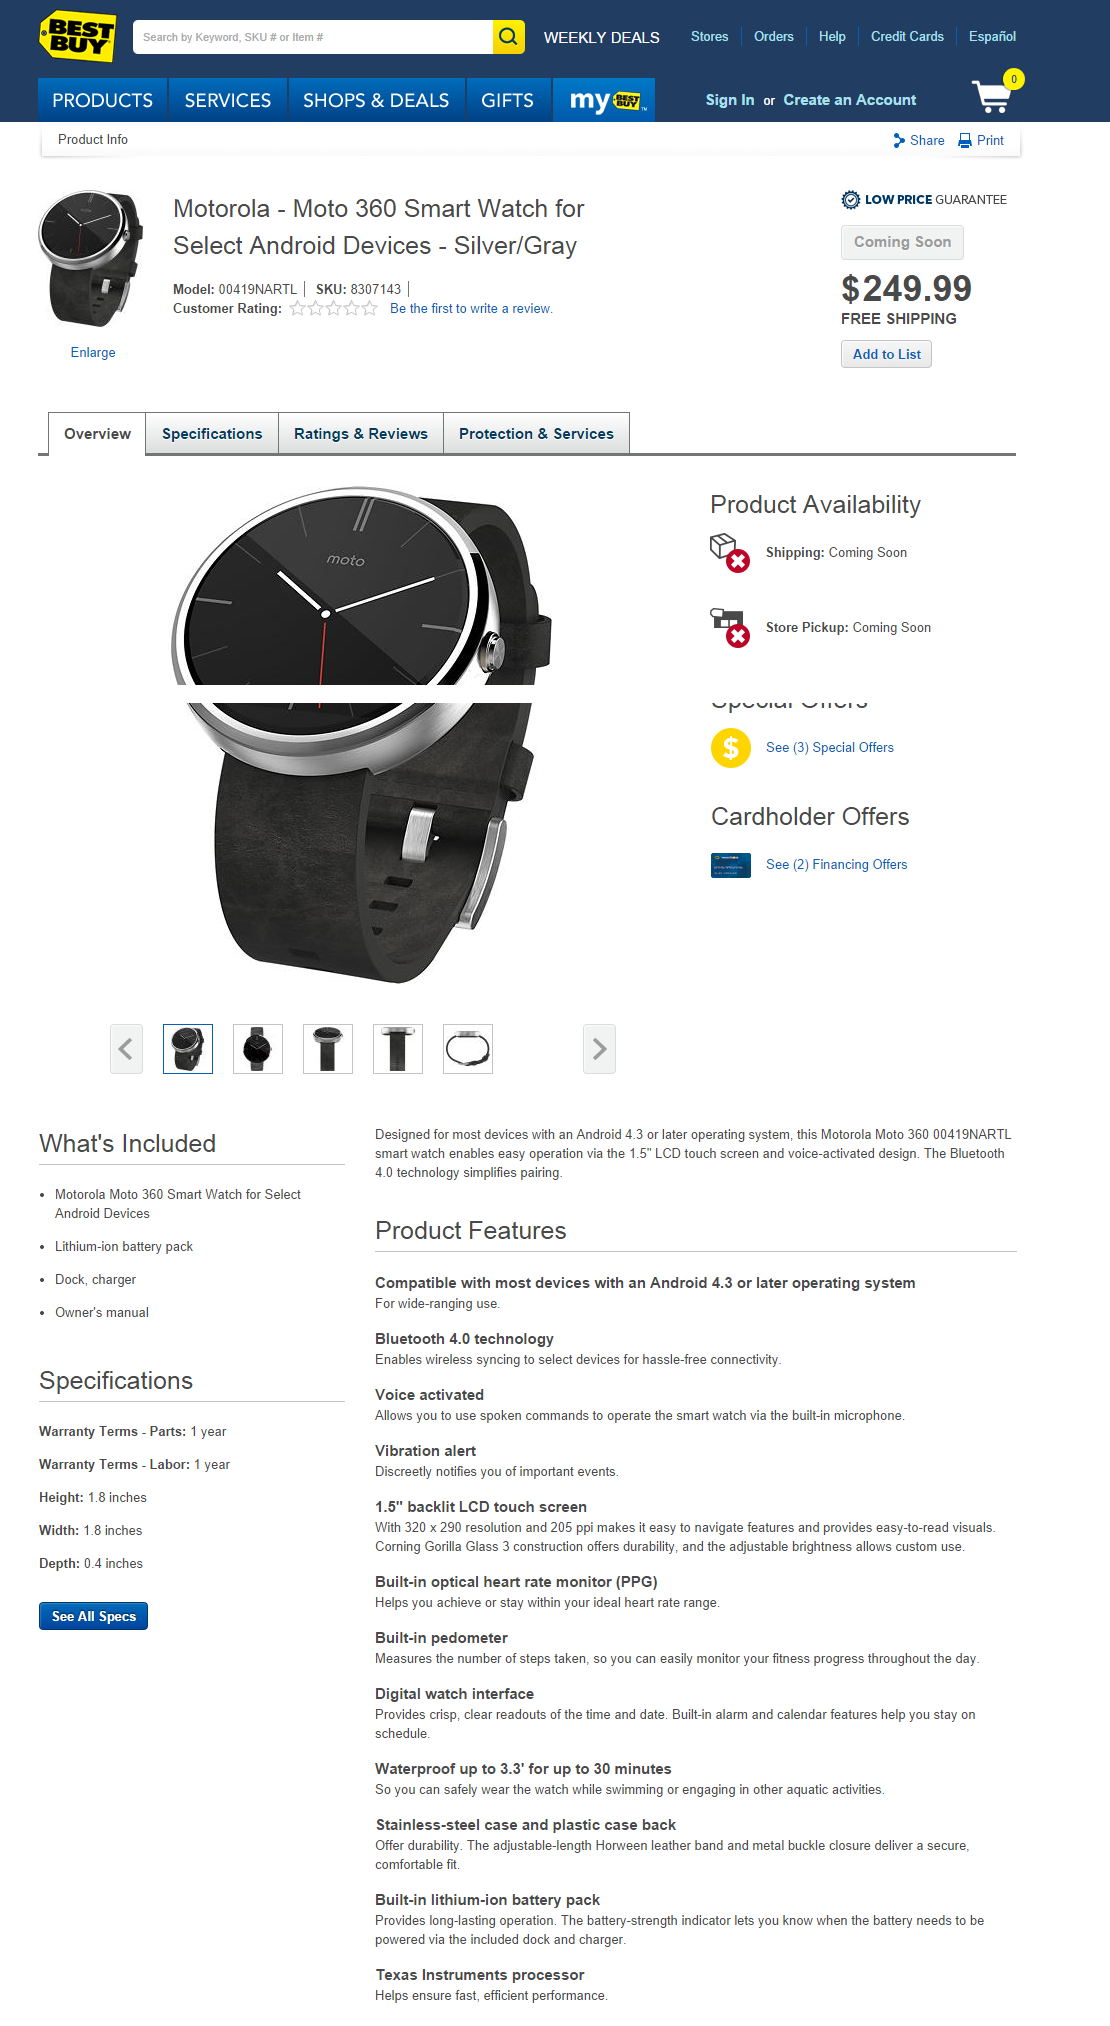 Умные часы Moto360 засветились в прайсах BestBuy с ценой 249,99$